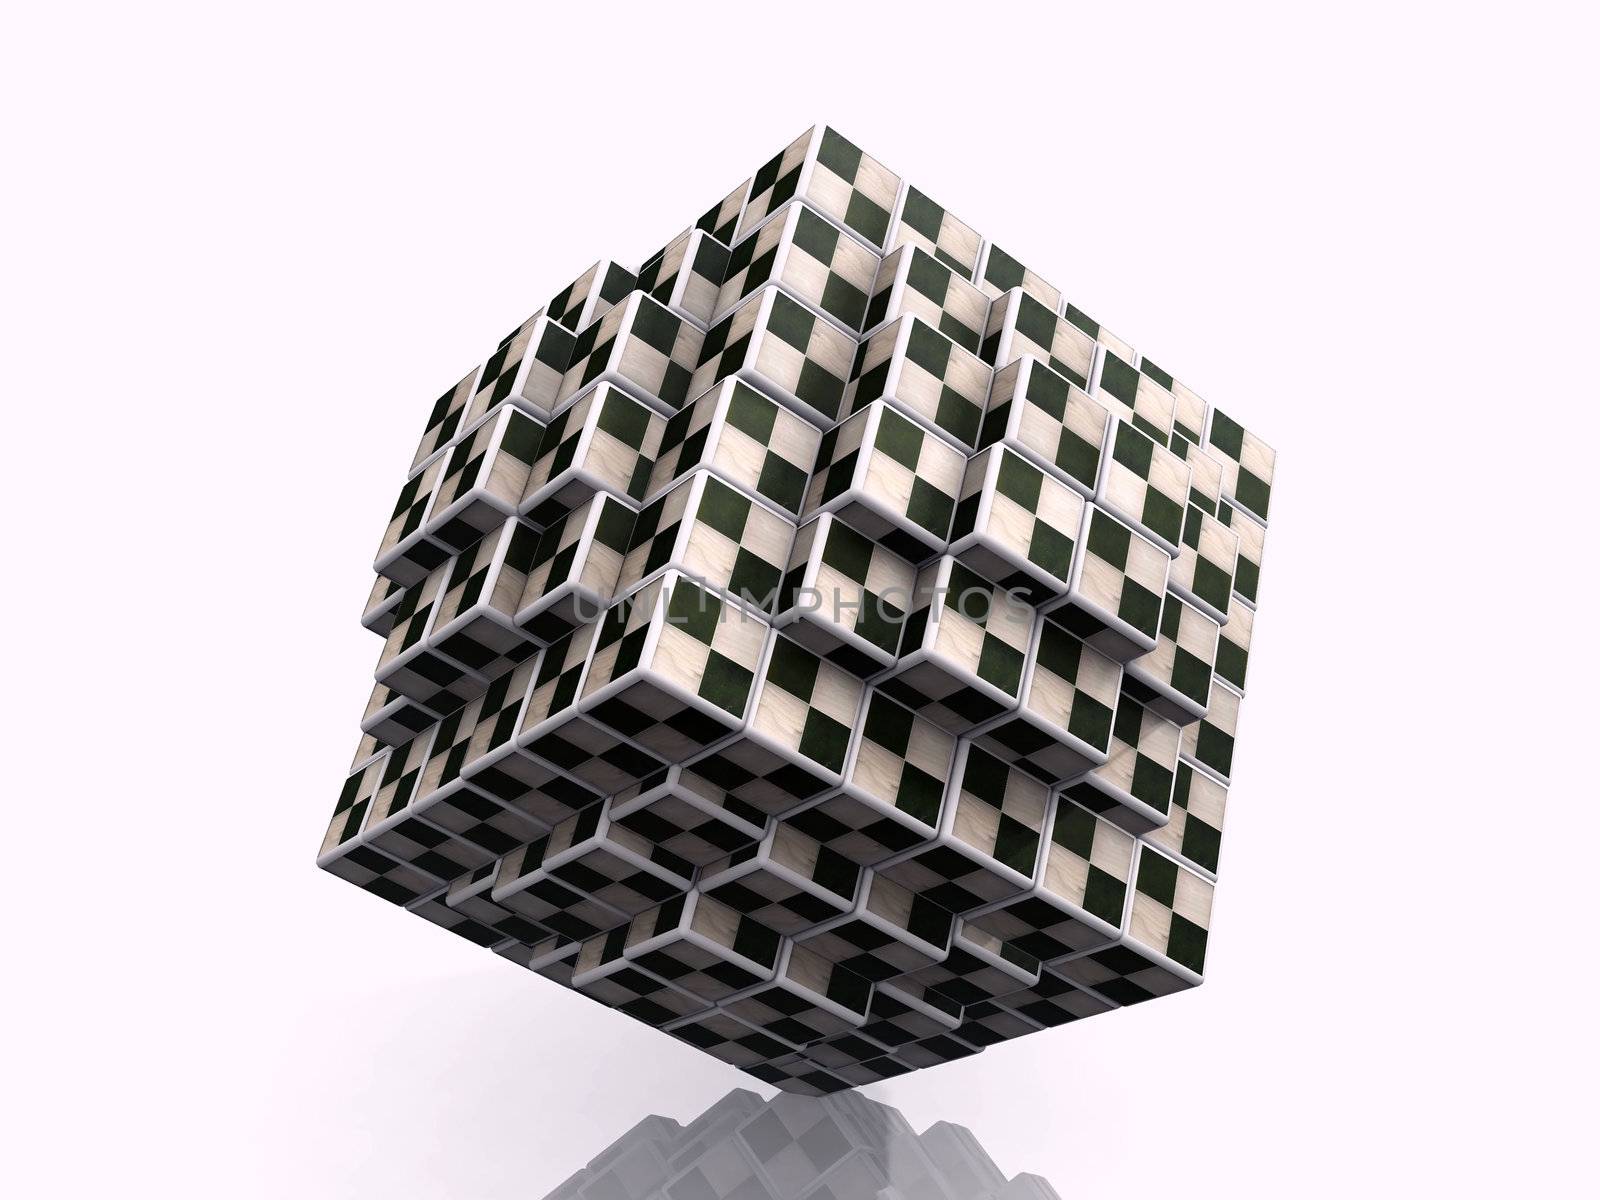 game cube by njaj